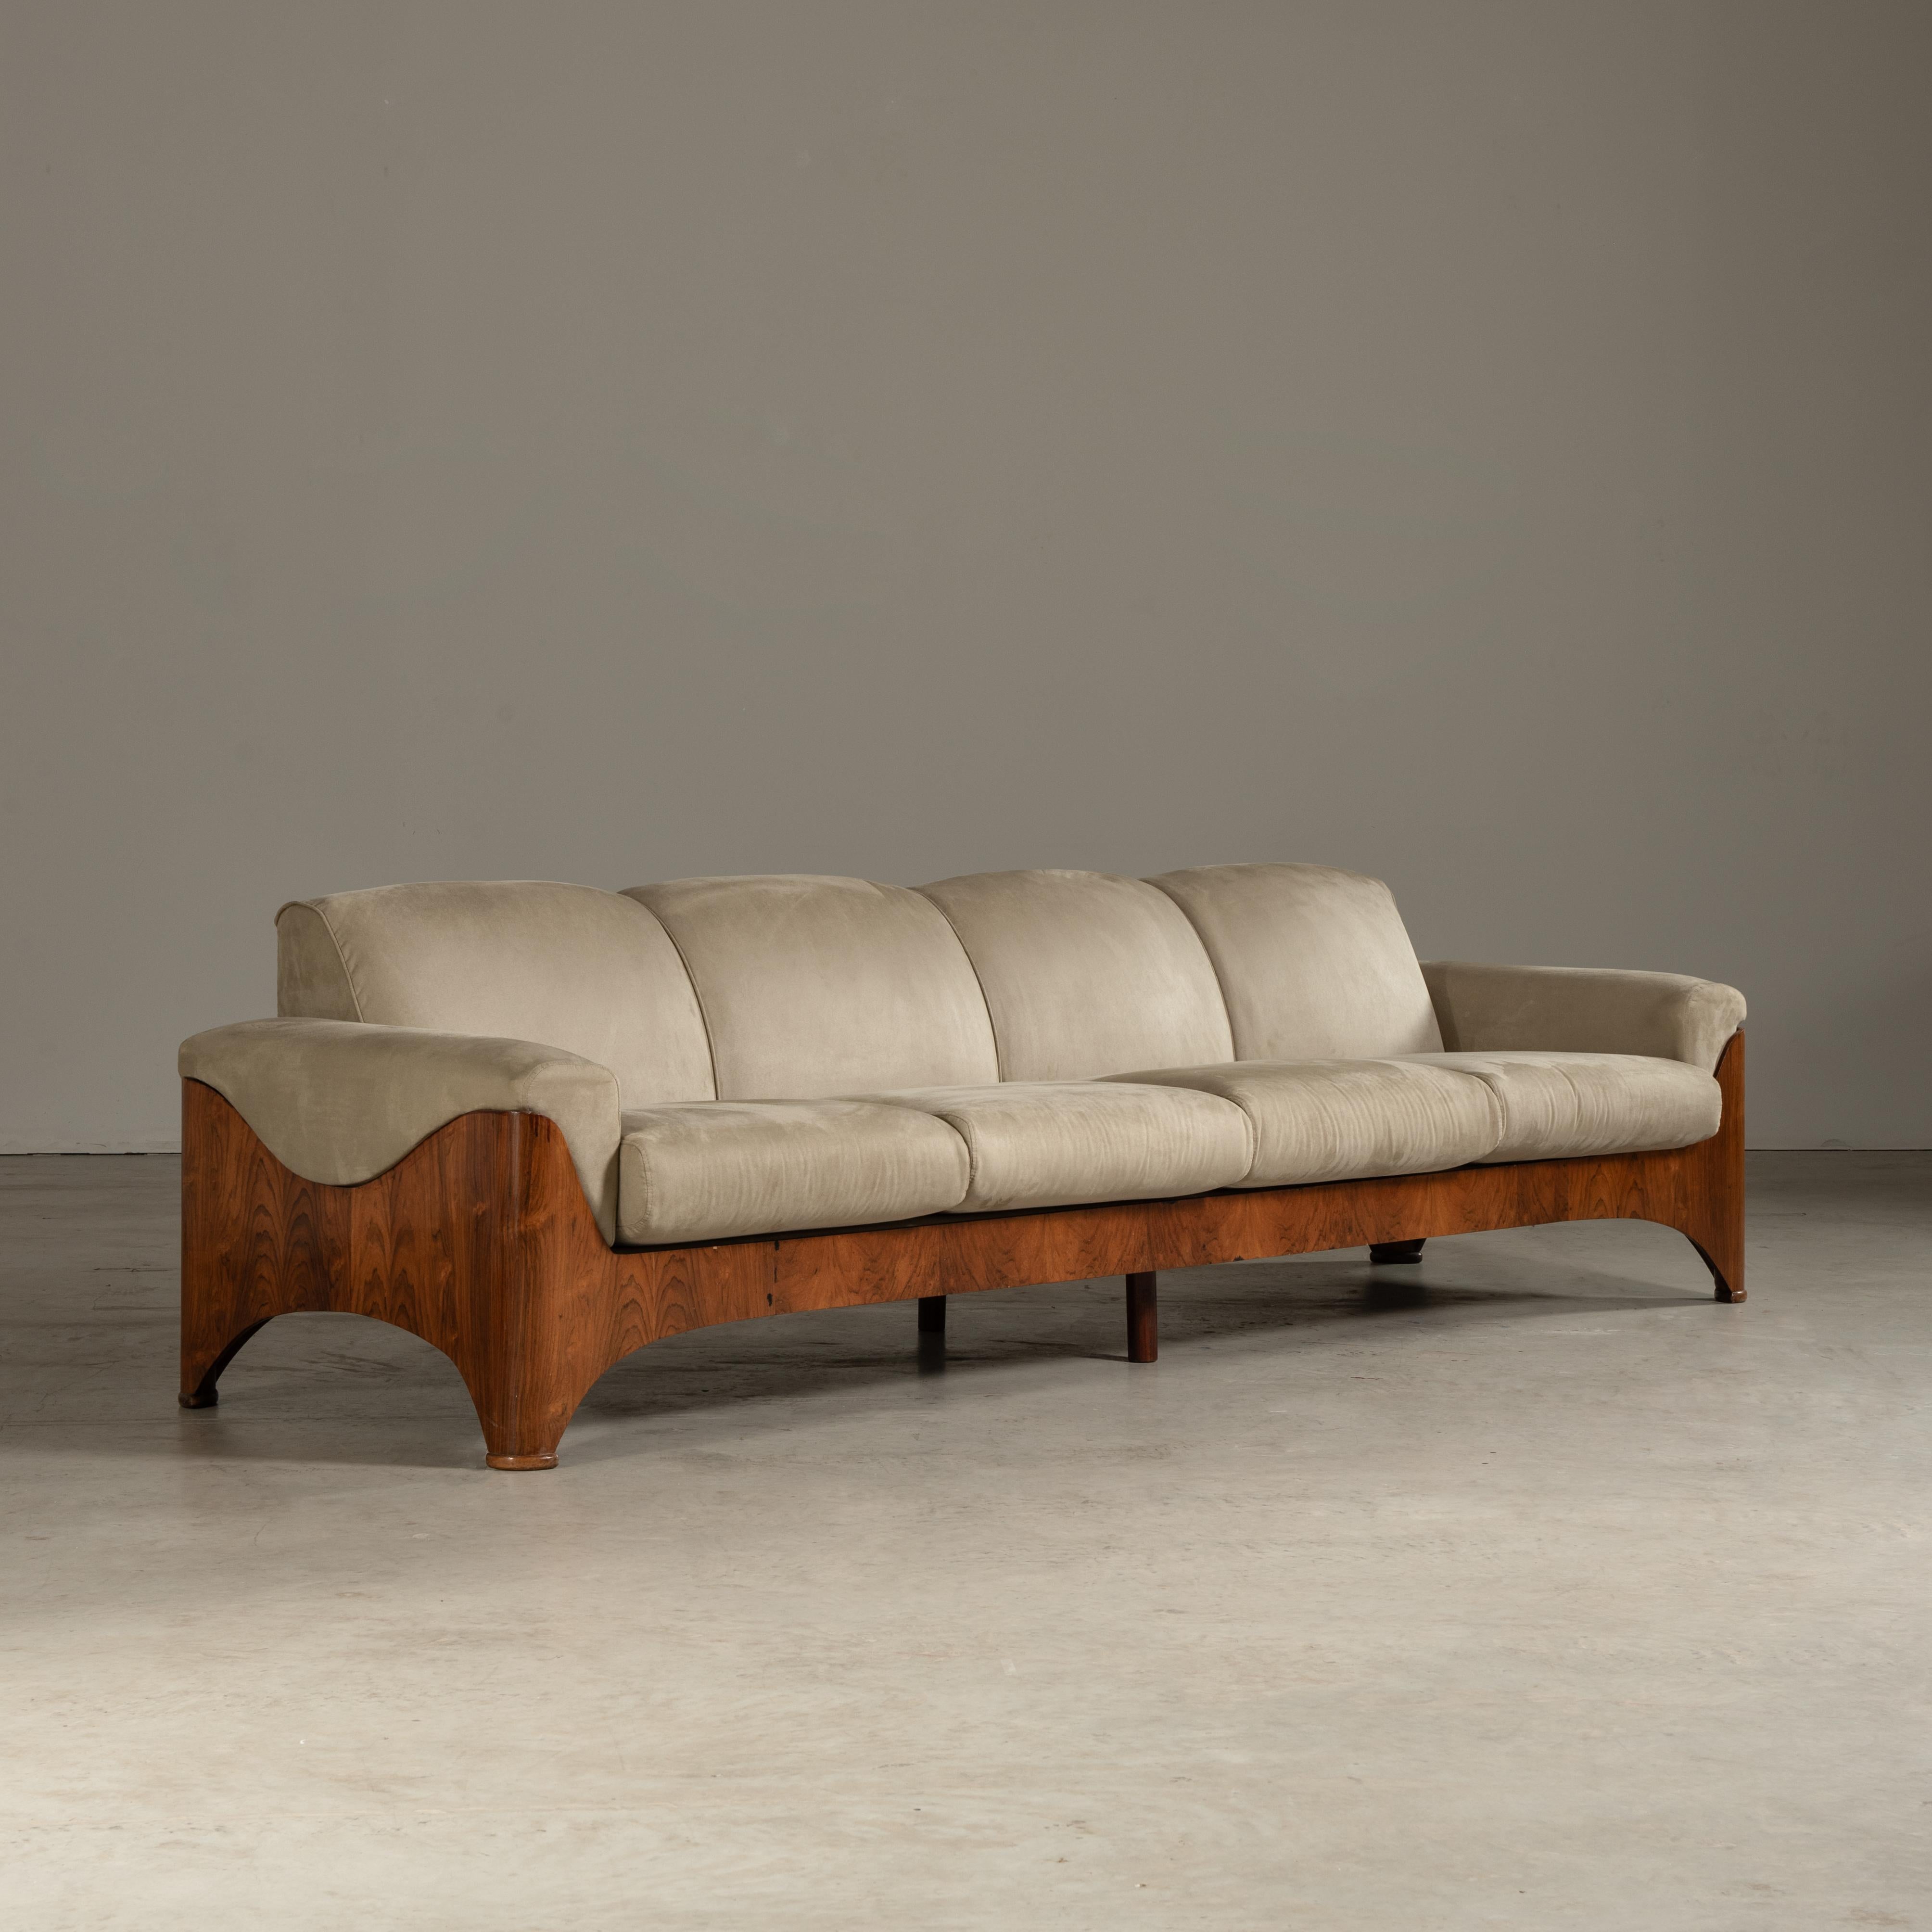 Das Sofa auf den Bildern strahlt die Raffinesse und das nuancierte Design des brasilianischen Mid-Century-Modern-Stils aus, der in den 1960er Jahren vorherrschte. Der Designer ist zwar unbekannt, aber das Stück selbst spricht Bände über die Liebe